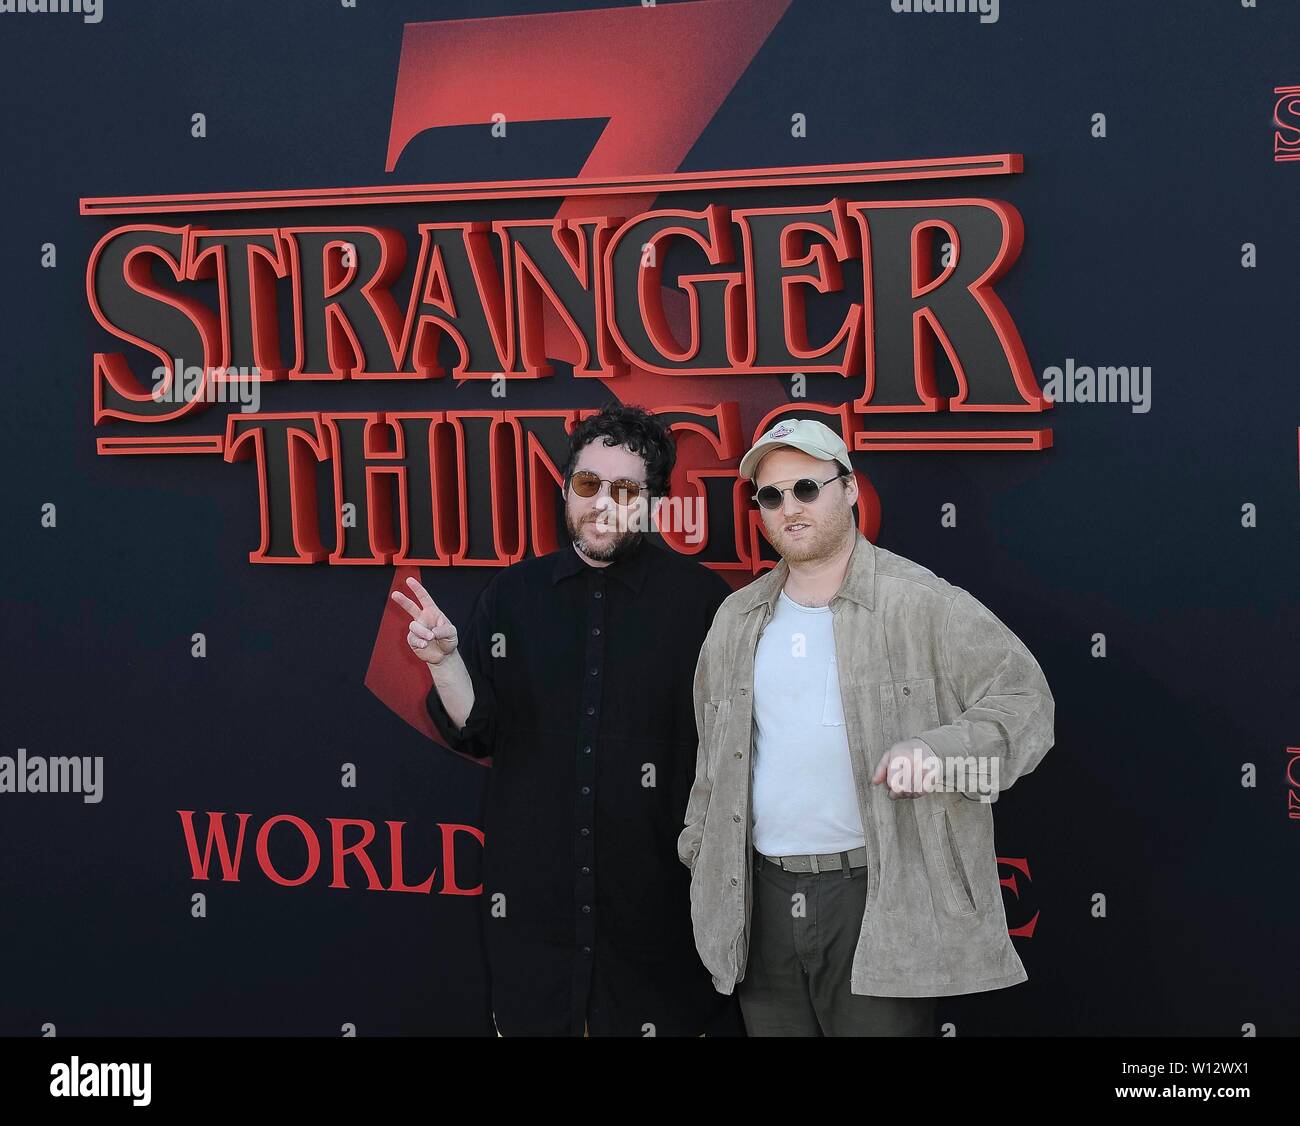 Stranger Things 4 - Full Album - Kyle Dixon & Michael Stein (Official  Video) 